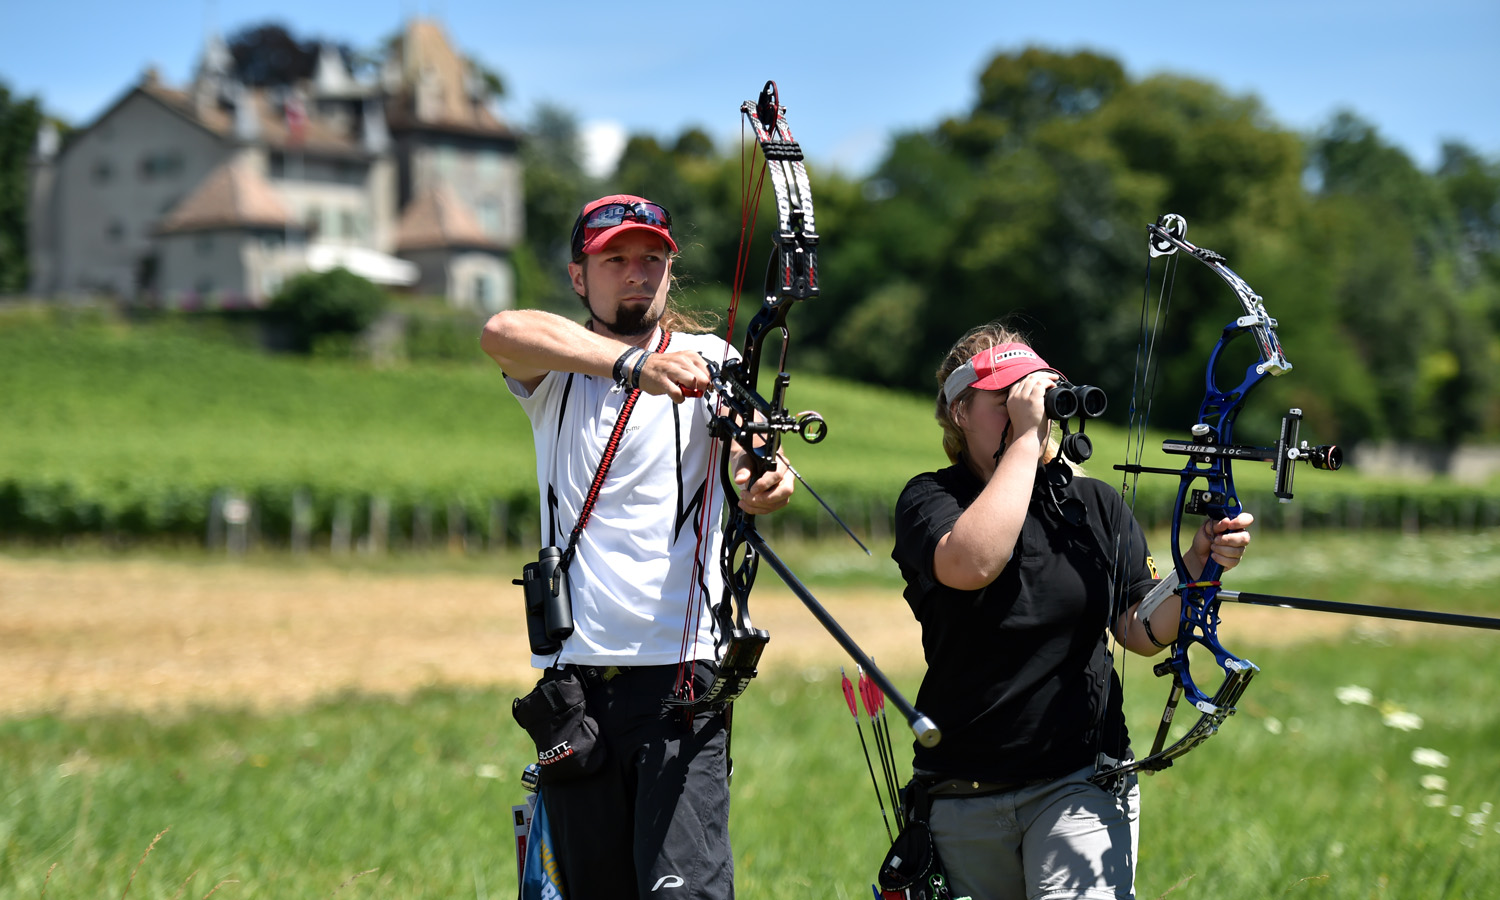 Top Archery au Château de Jussy